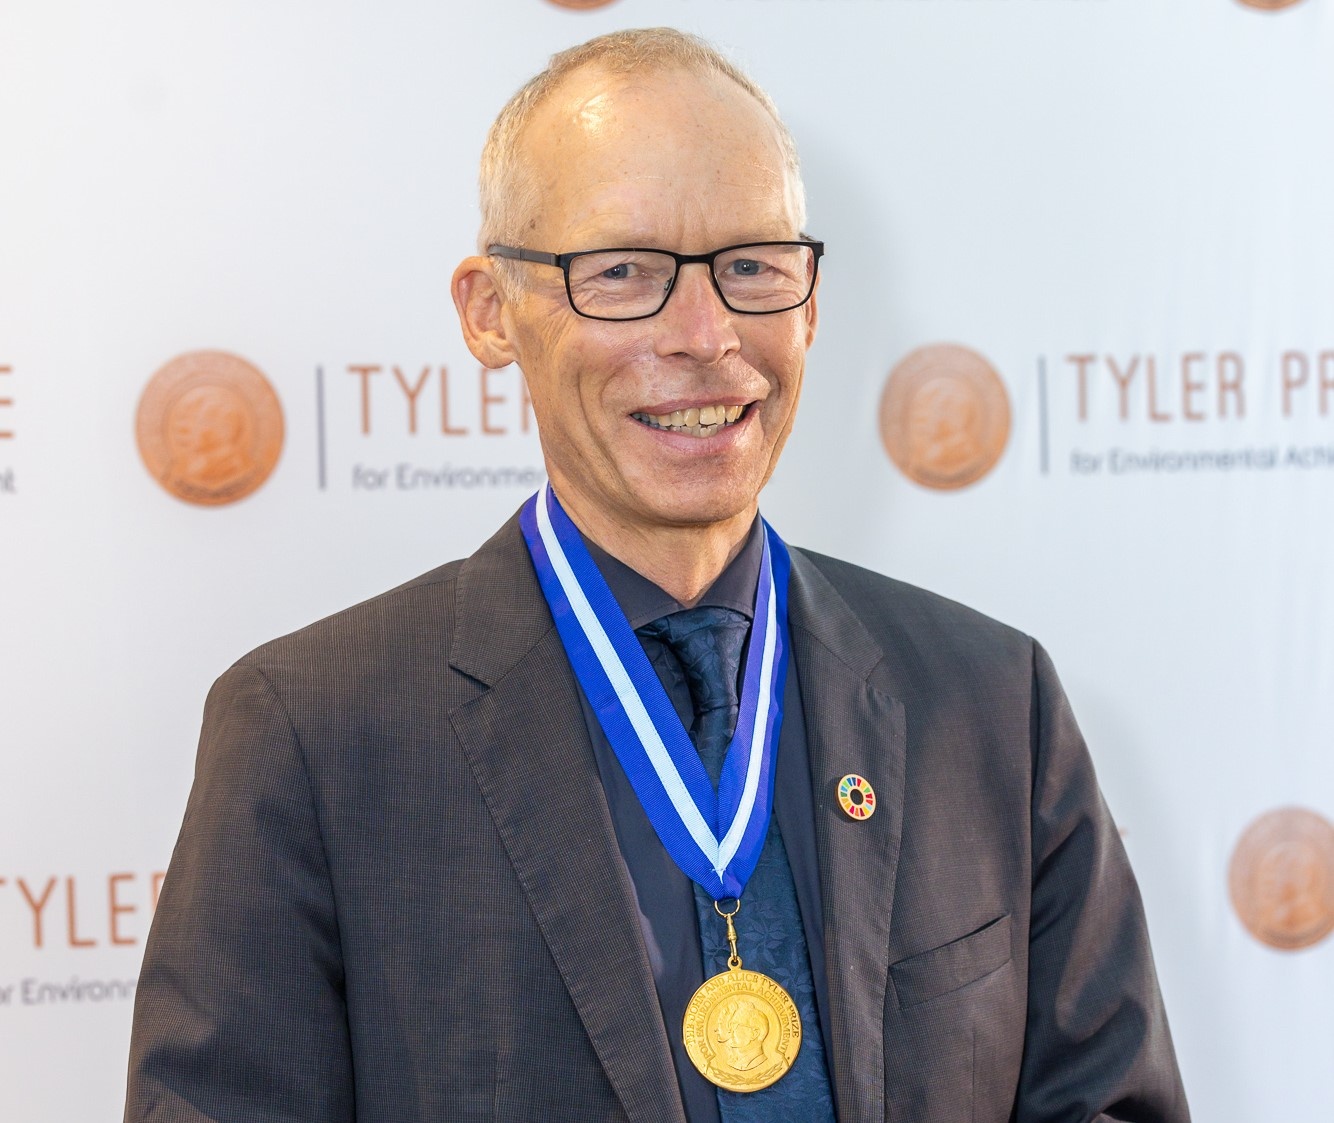 Johan Rockström in Potsdam mit Tyler-Preis für Umweltverdienste geehrt